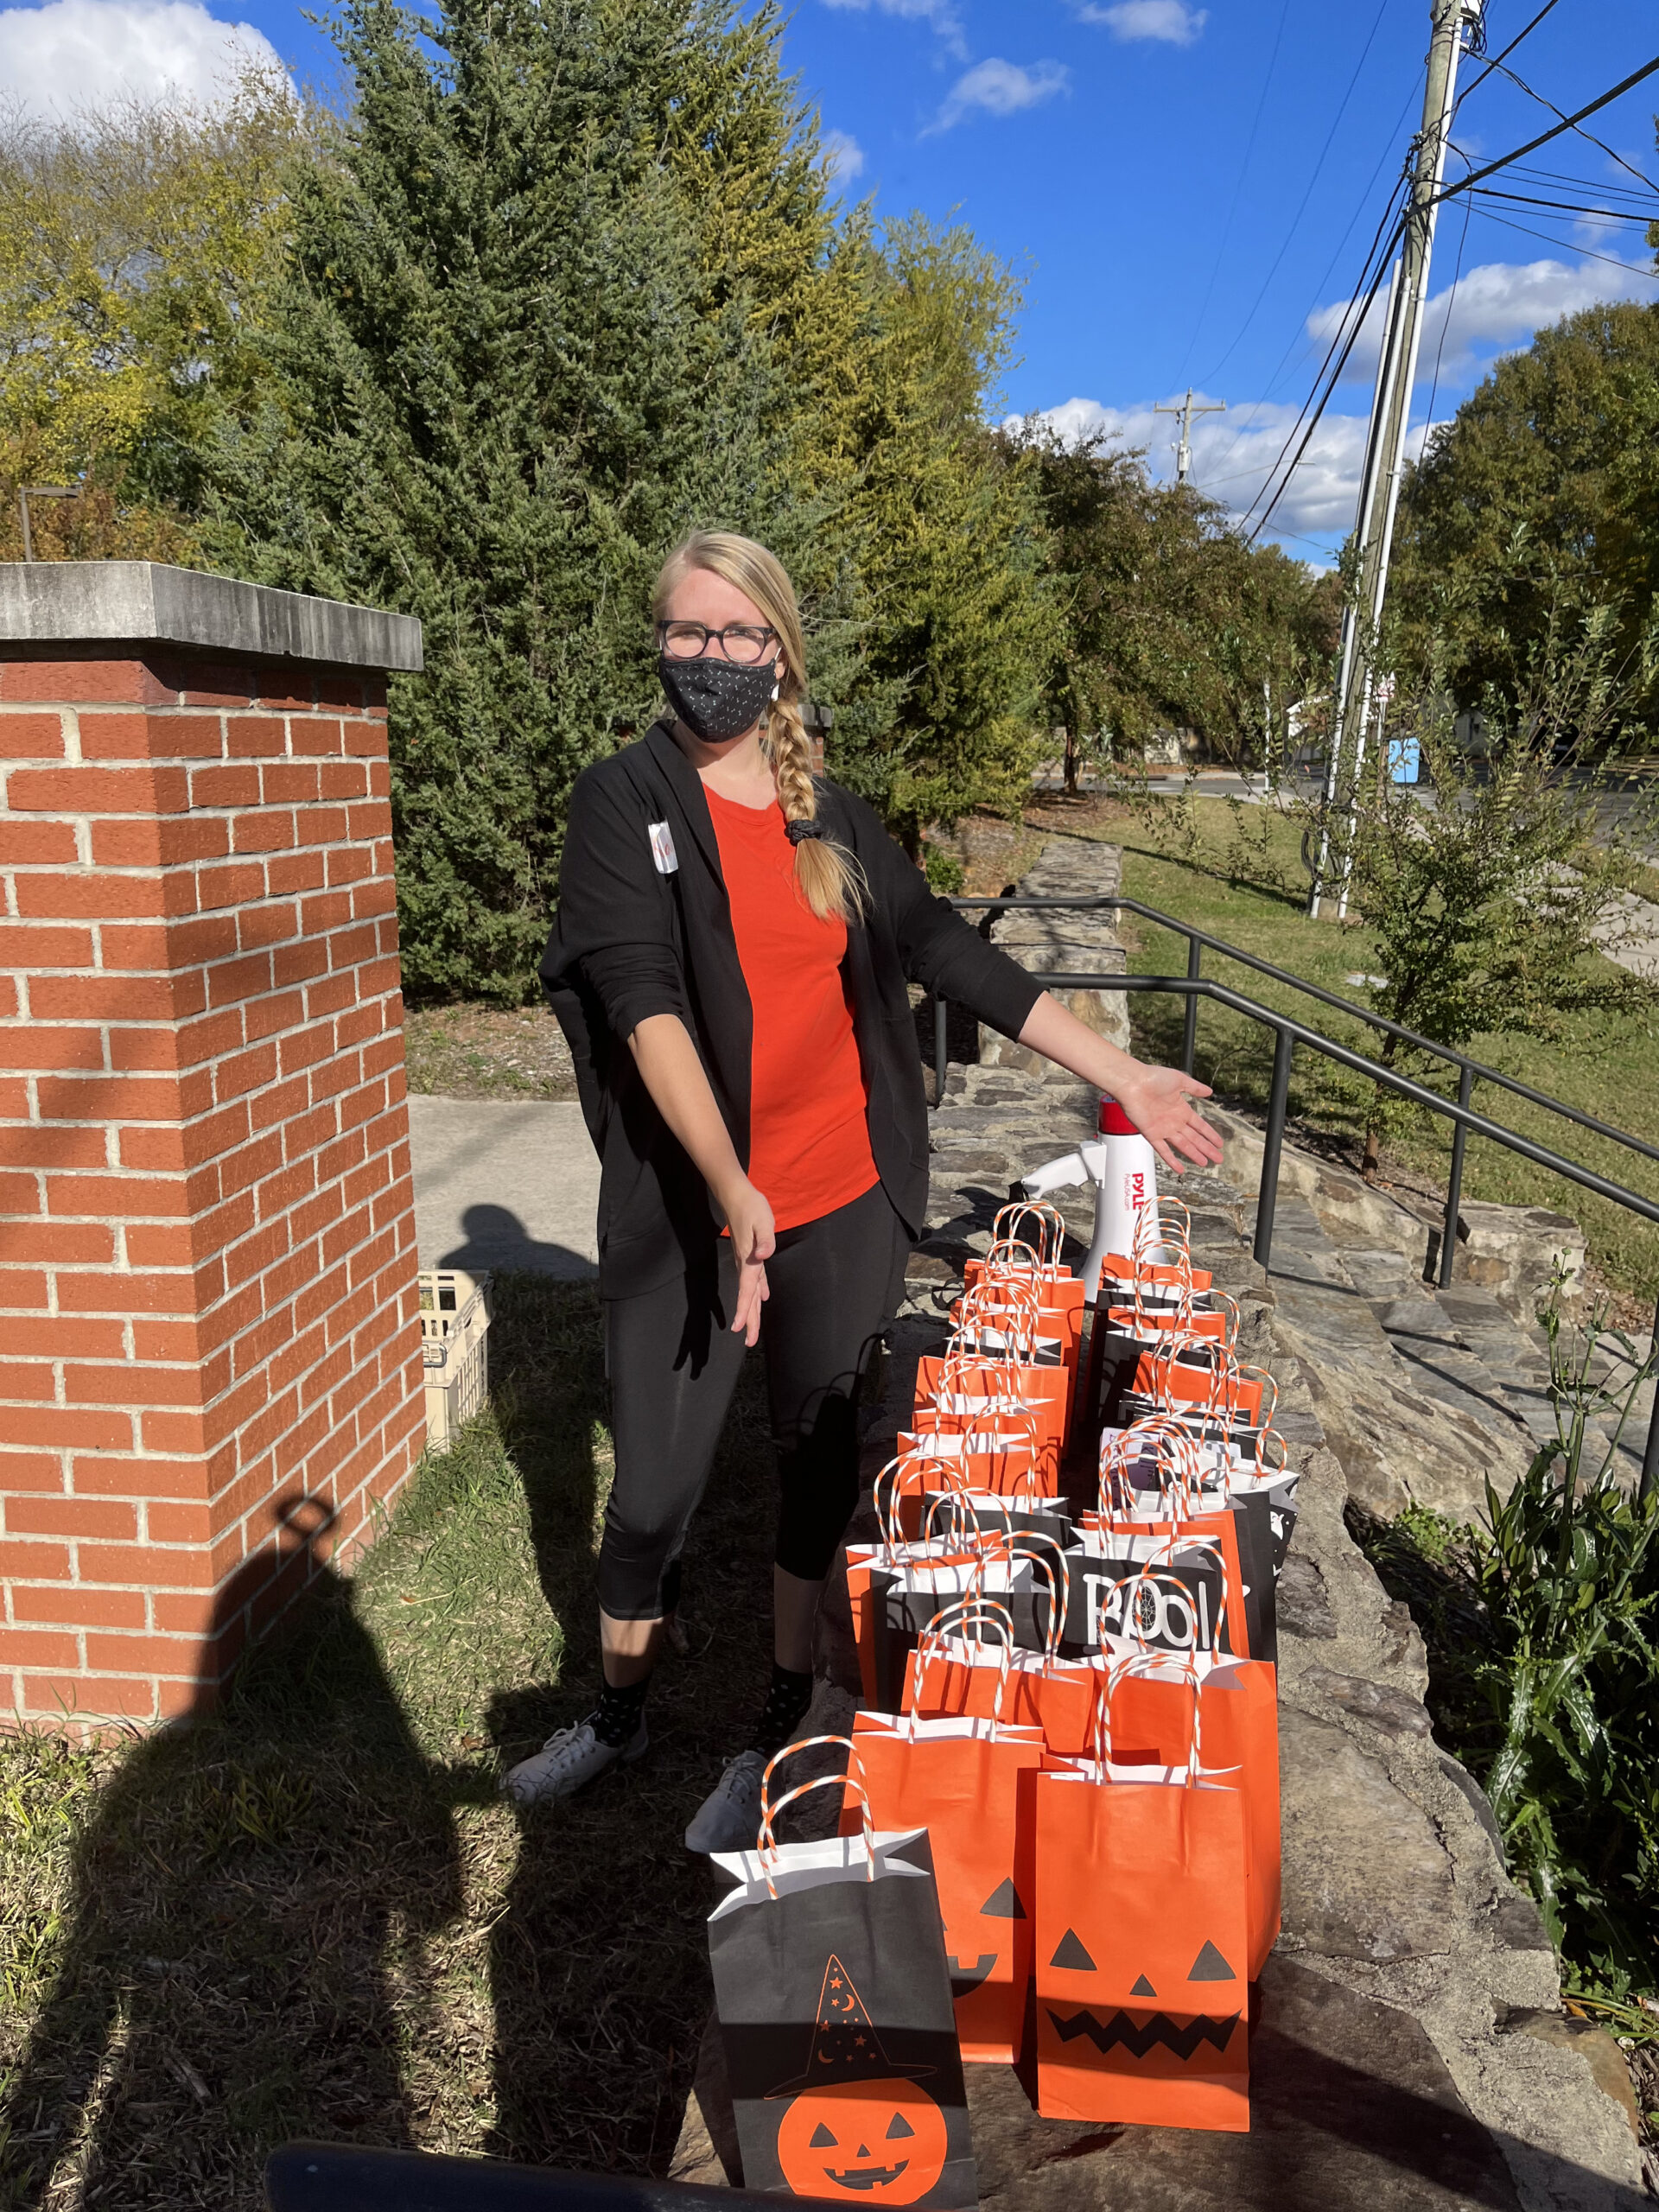 Kari distributing spooky bags